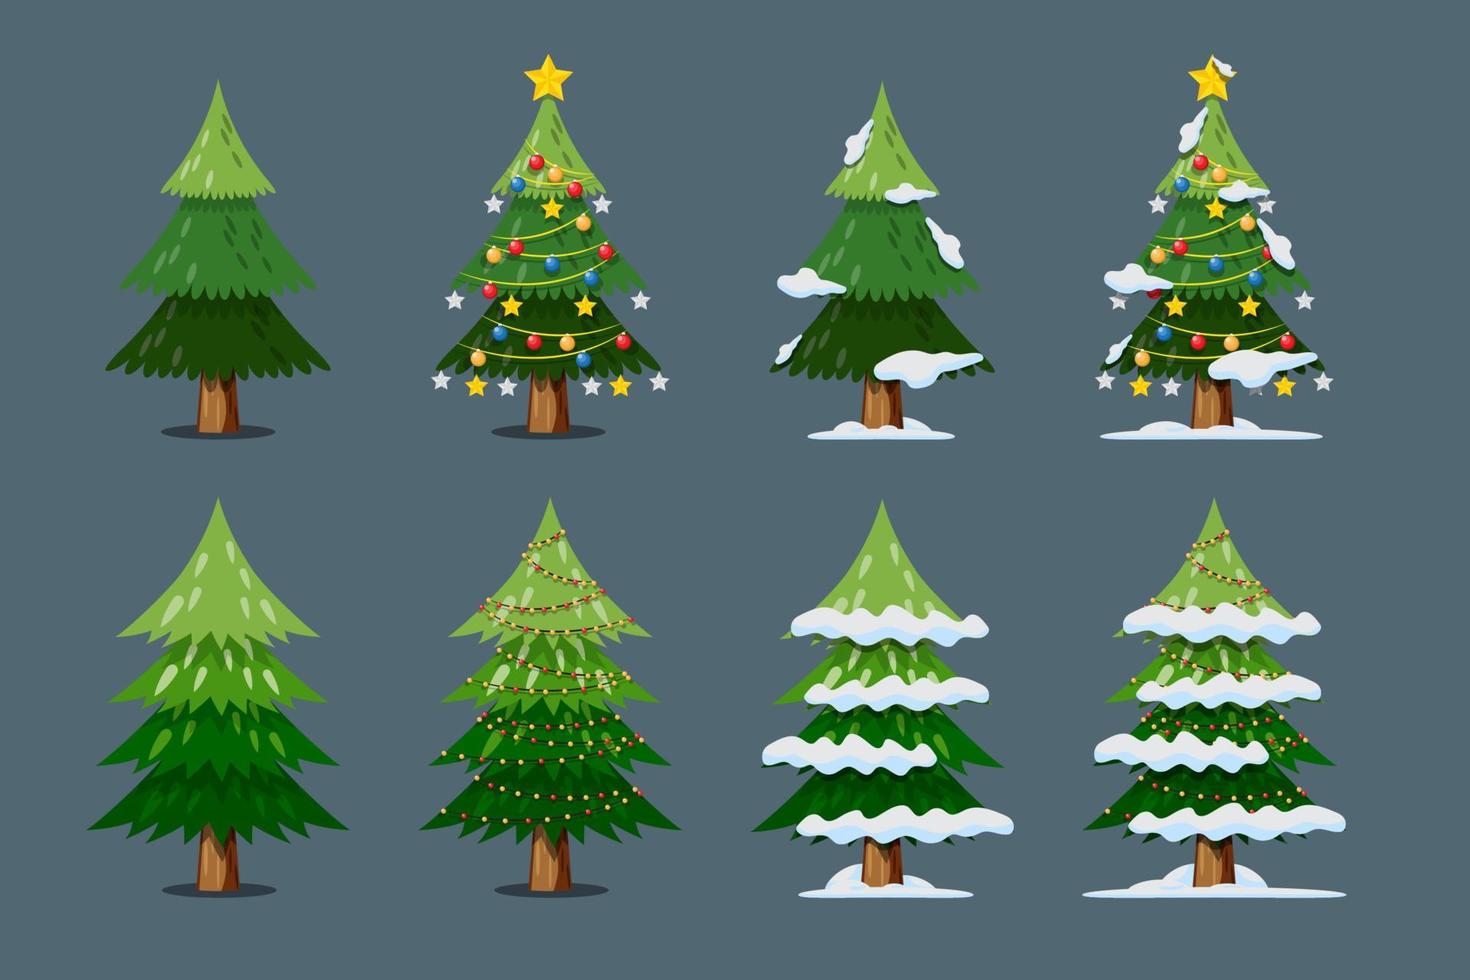 Vektor-Weihnachtsbaum isoliert mit Glühbirne, Sternen und Kugeln, Schnee auf den Blättern auf weißem Hintergrund. vektor